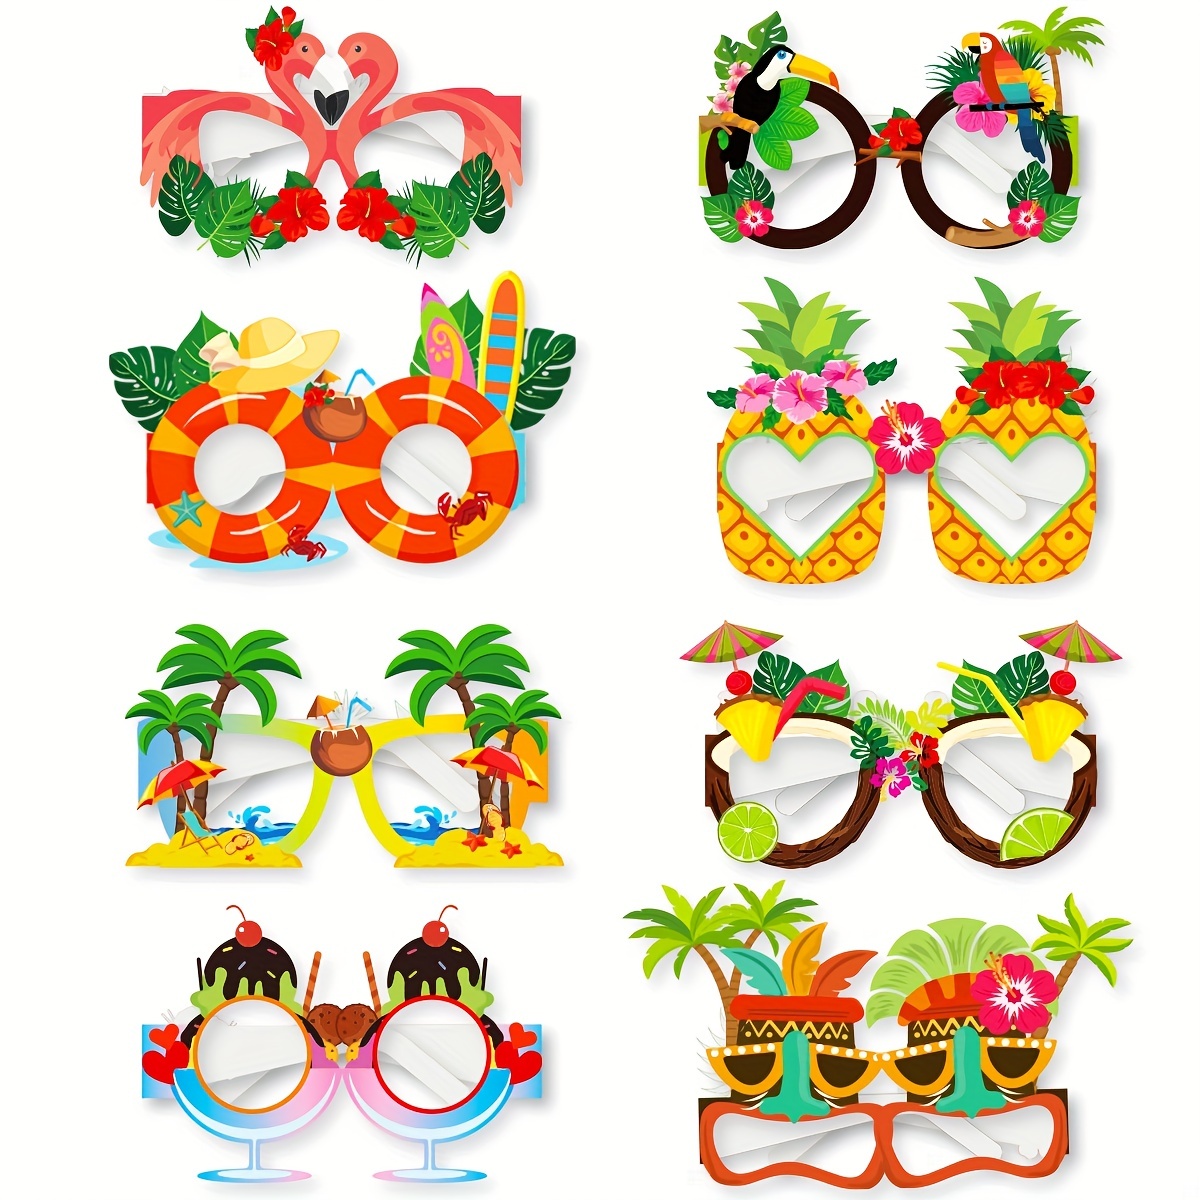 6 pares de lentes de sol novedosos para fiesta, divertidos lentes de sol de  fiesta Luau hawaianos, gafas tropicales hawaianas, suministros para